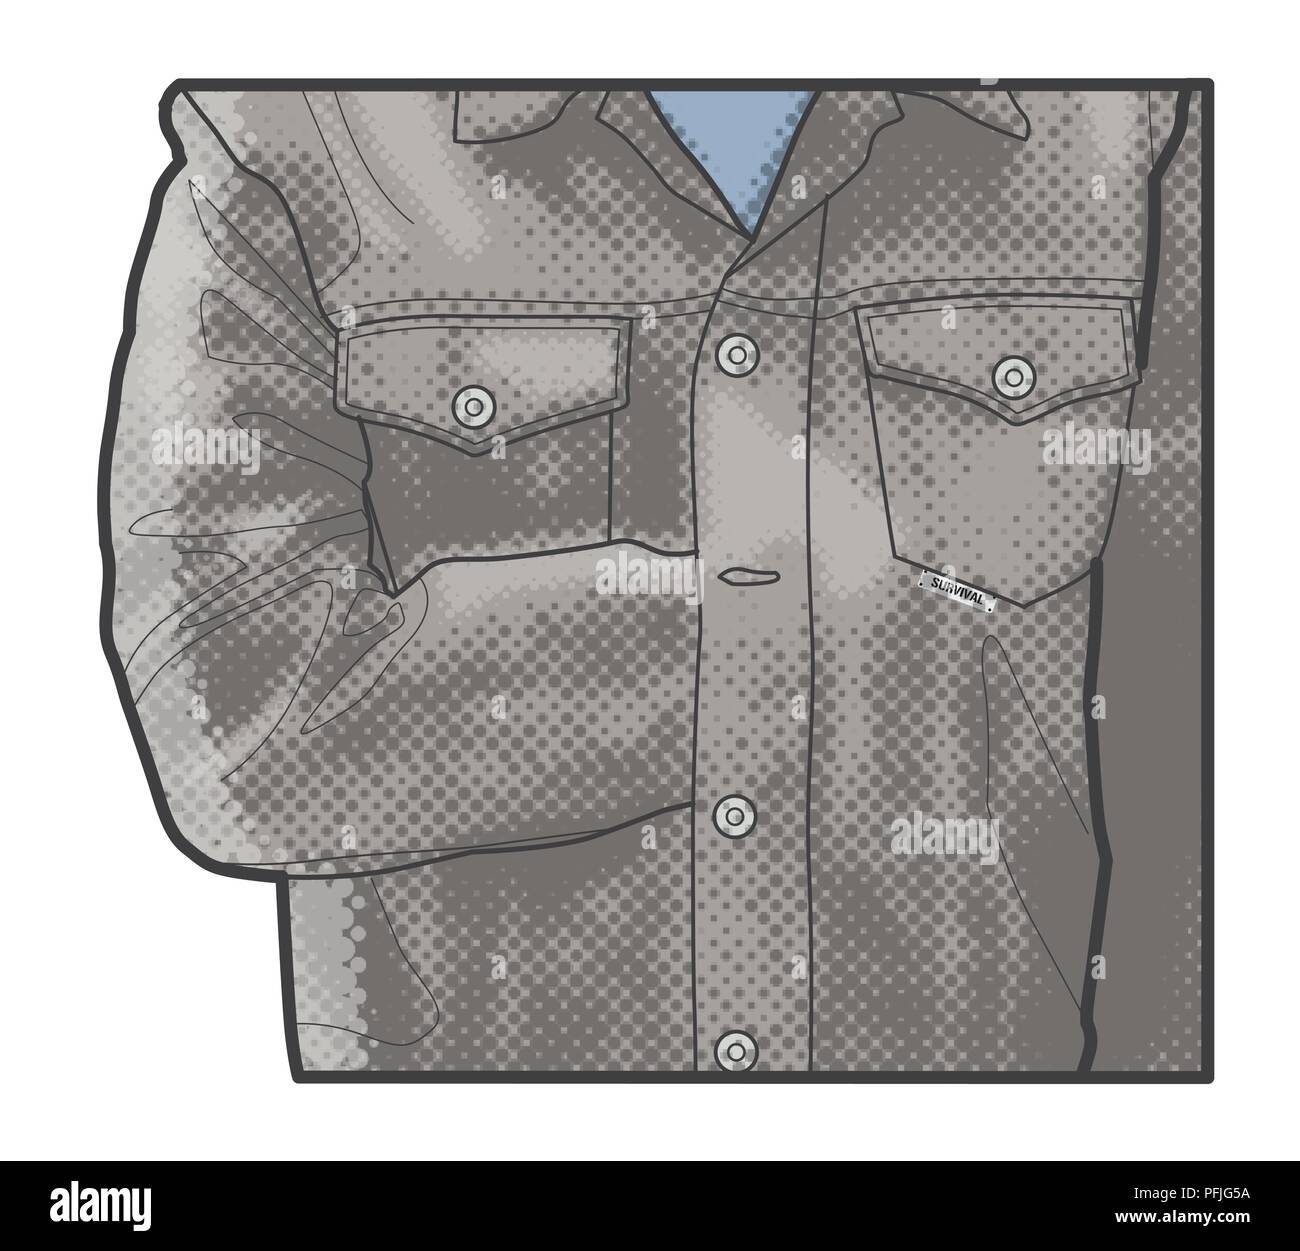 Illustration numérique de l'homme à l'aide de fermoirs comme veste harnais improvisé Banque D'Images